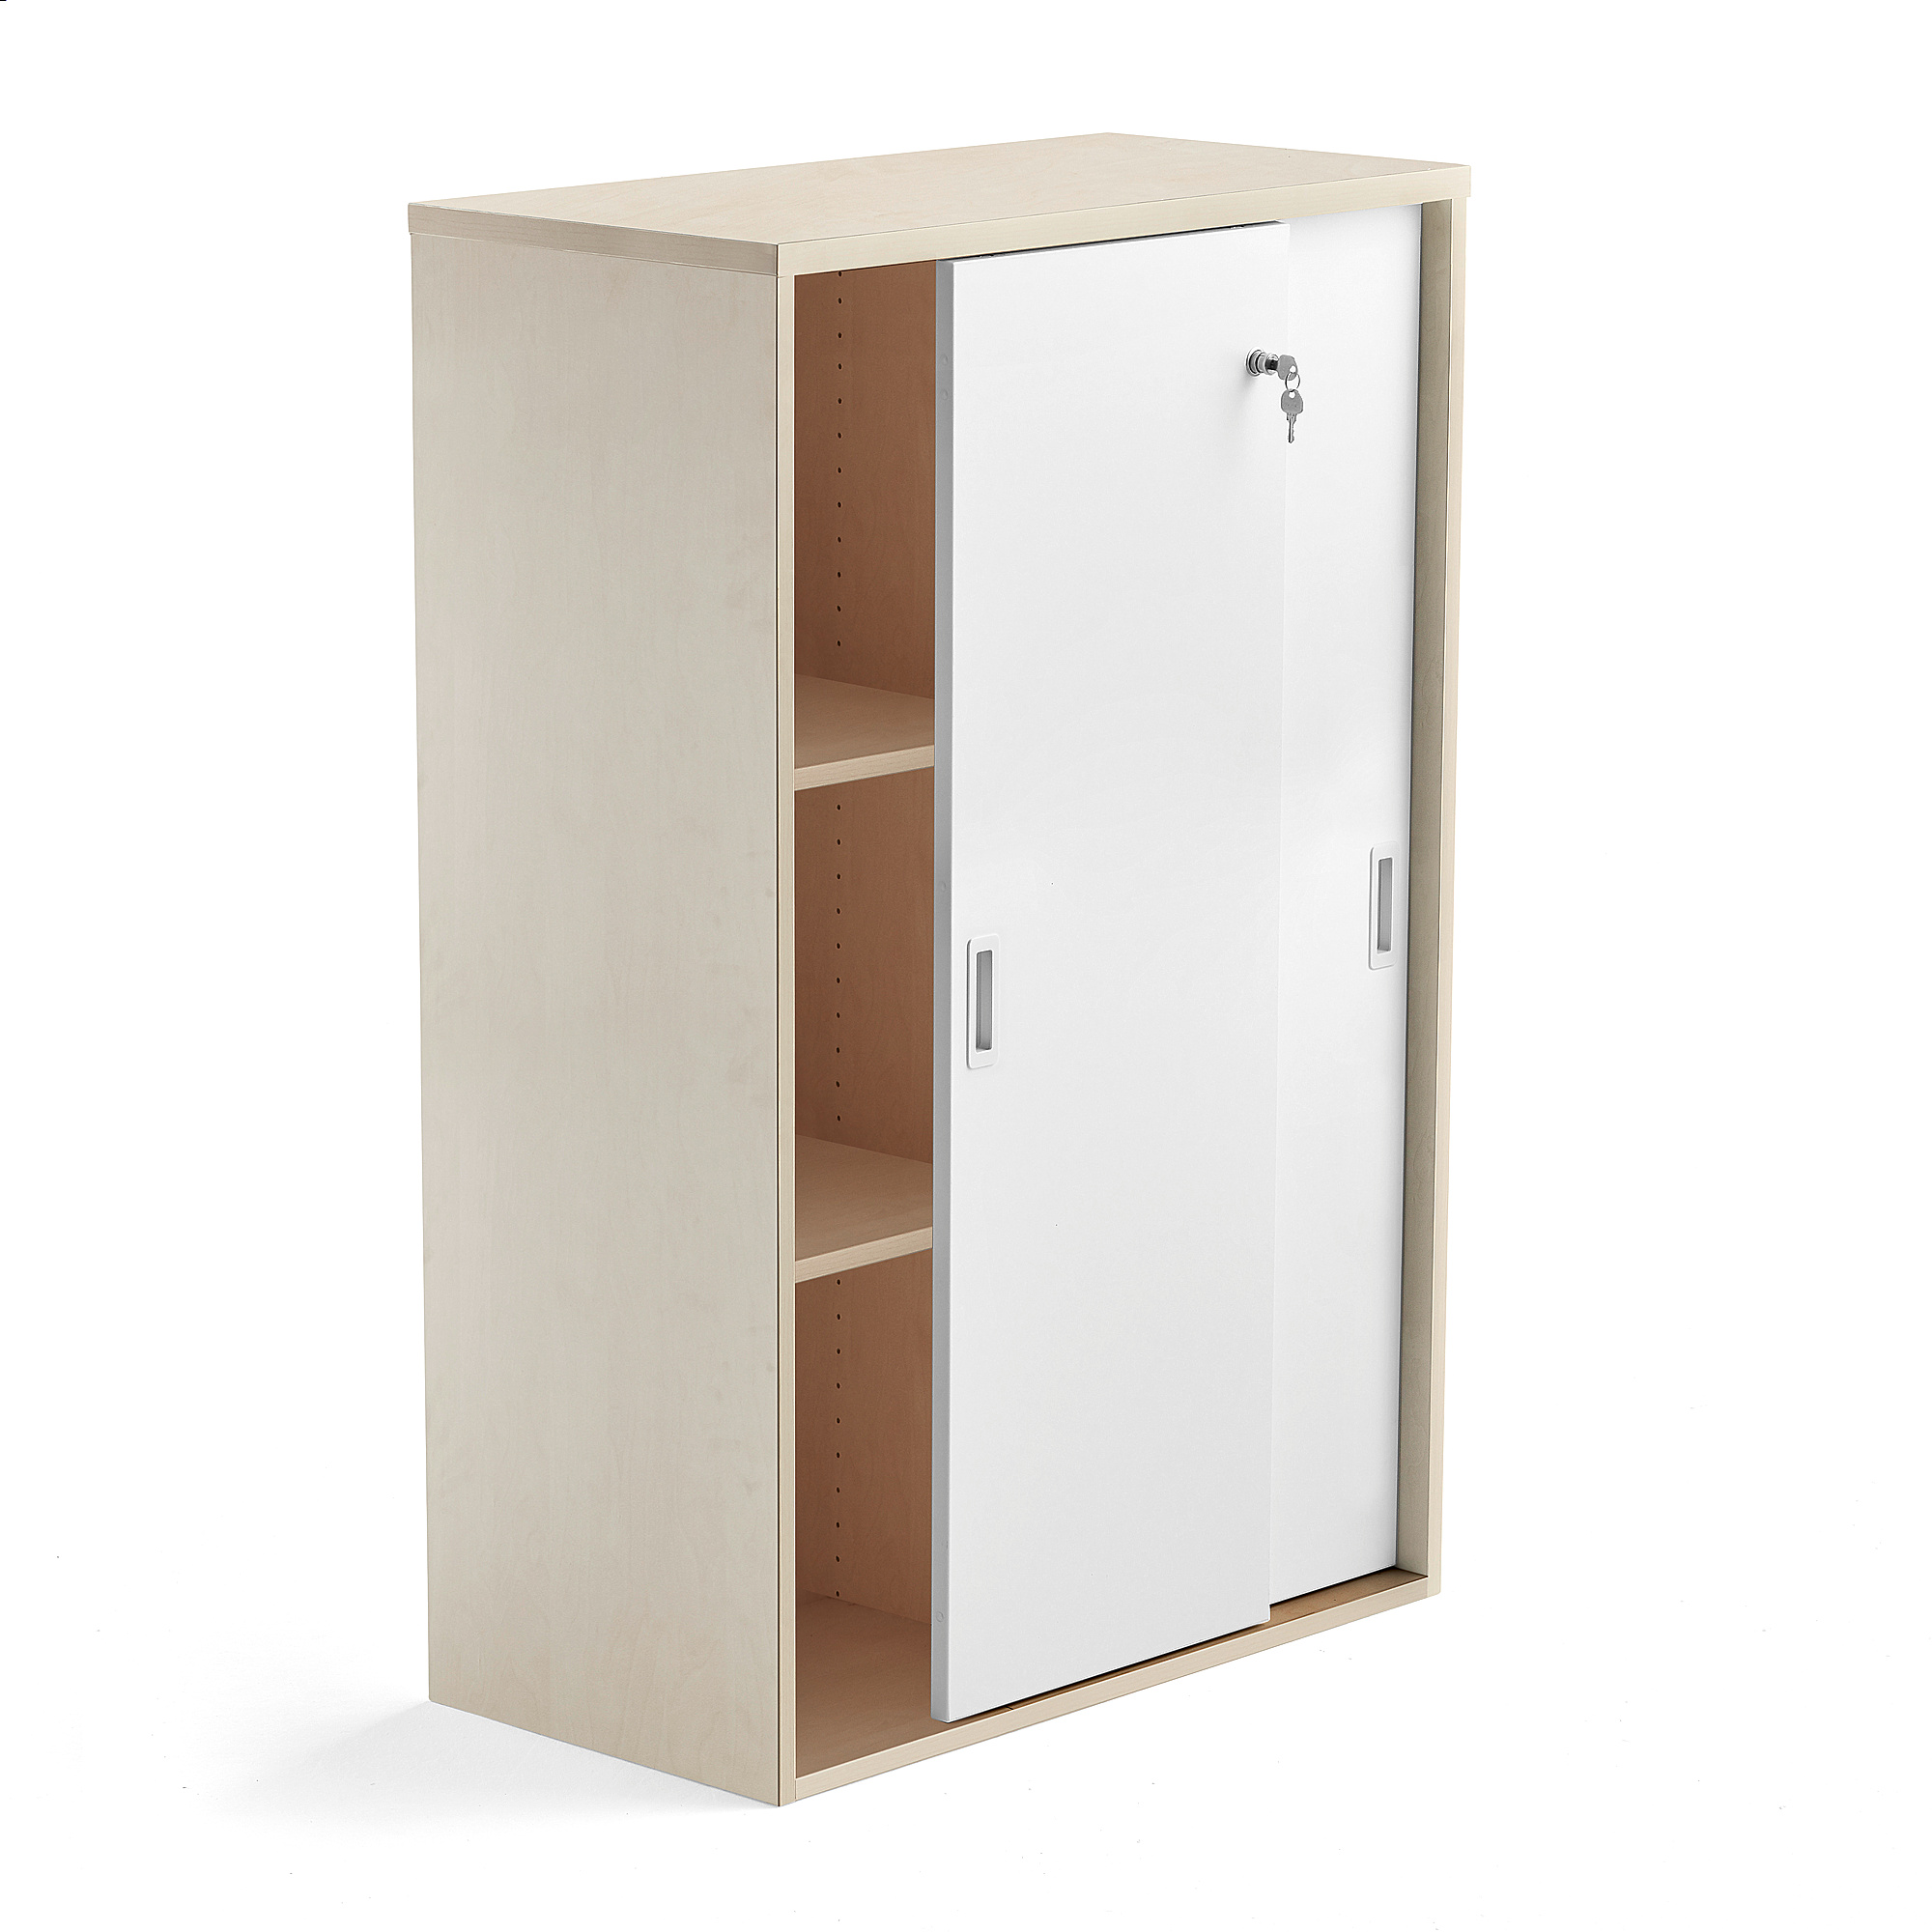 Kancelárska skriňa s posuvnými dverami MODULUS, 1200x800 mm, breza, biela